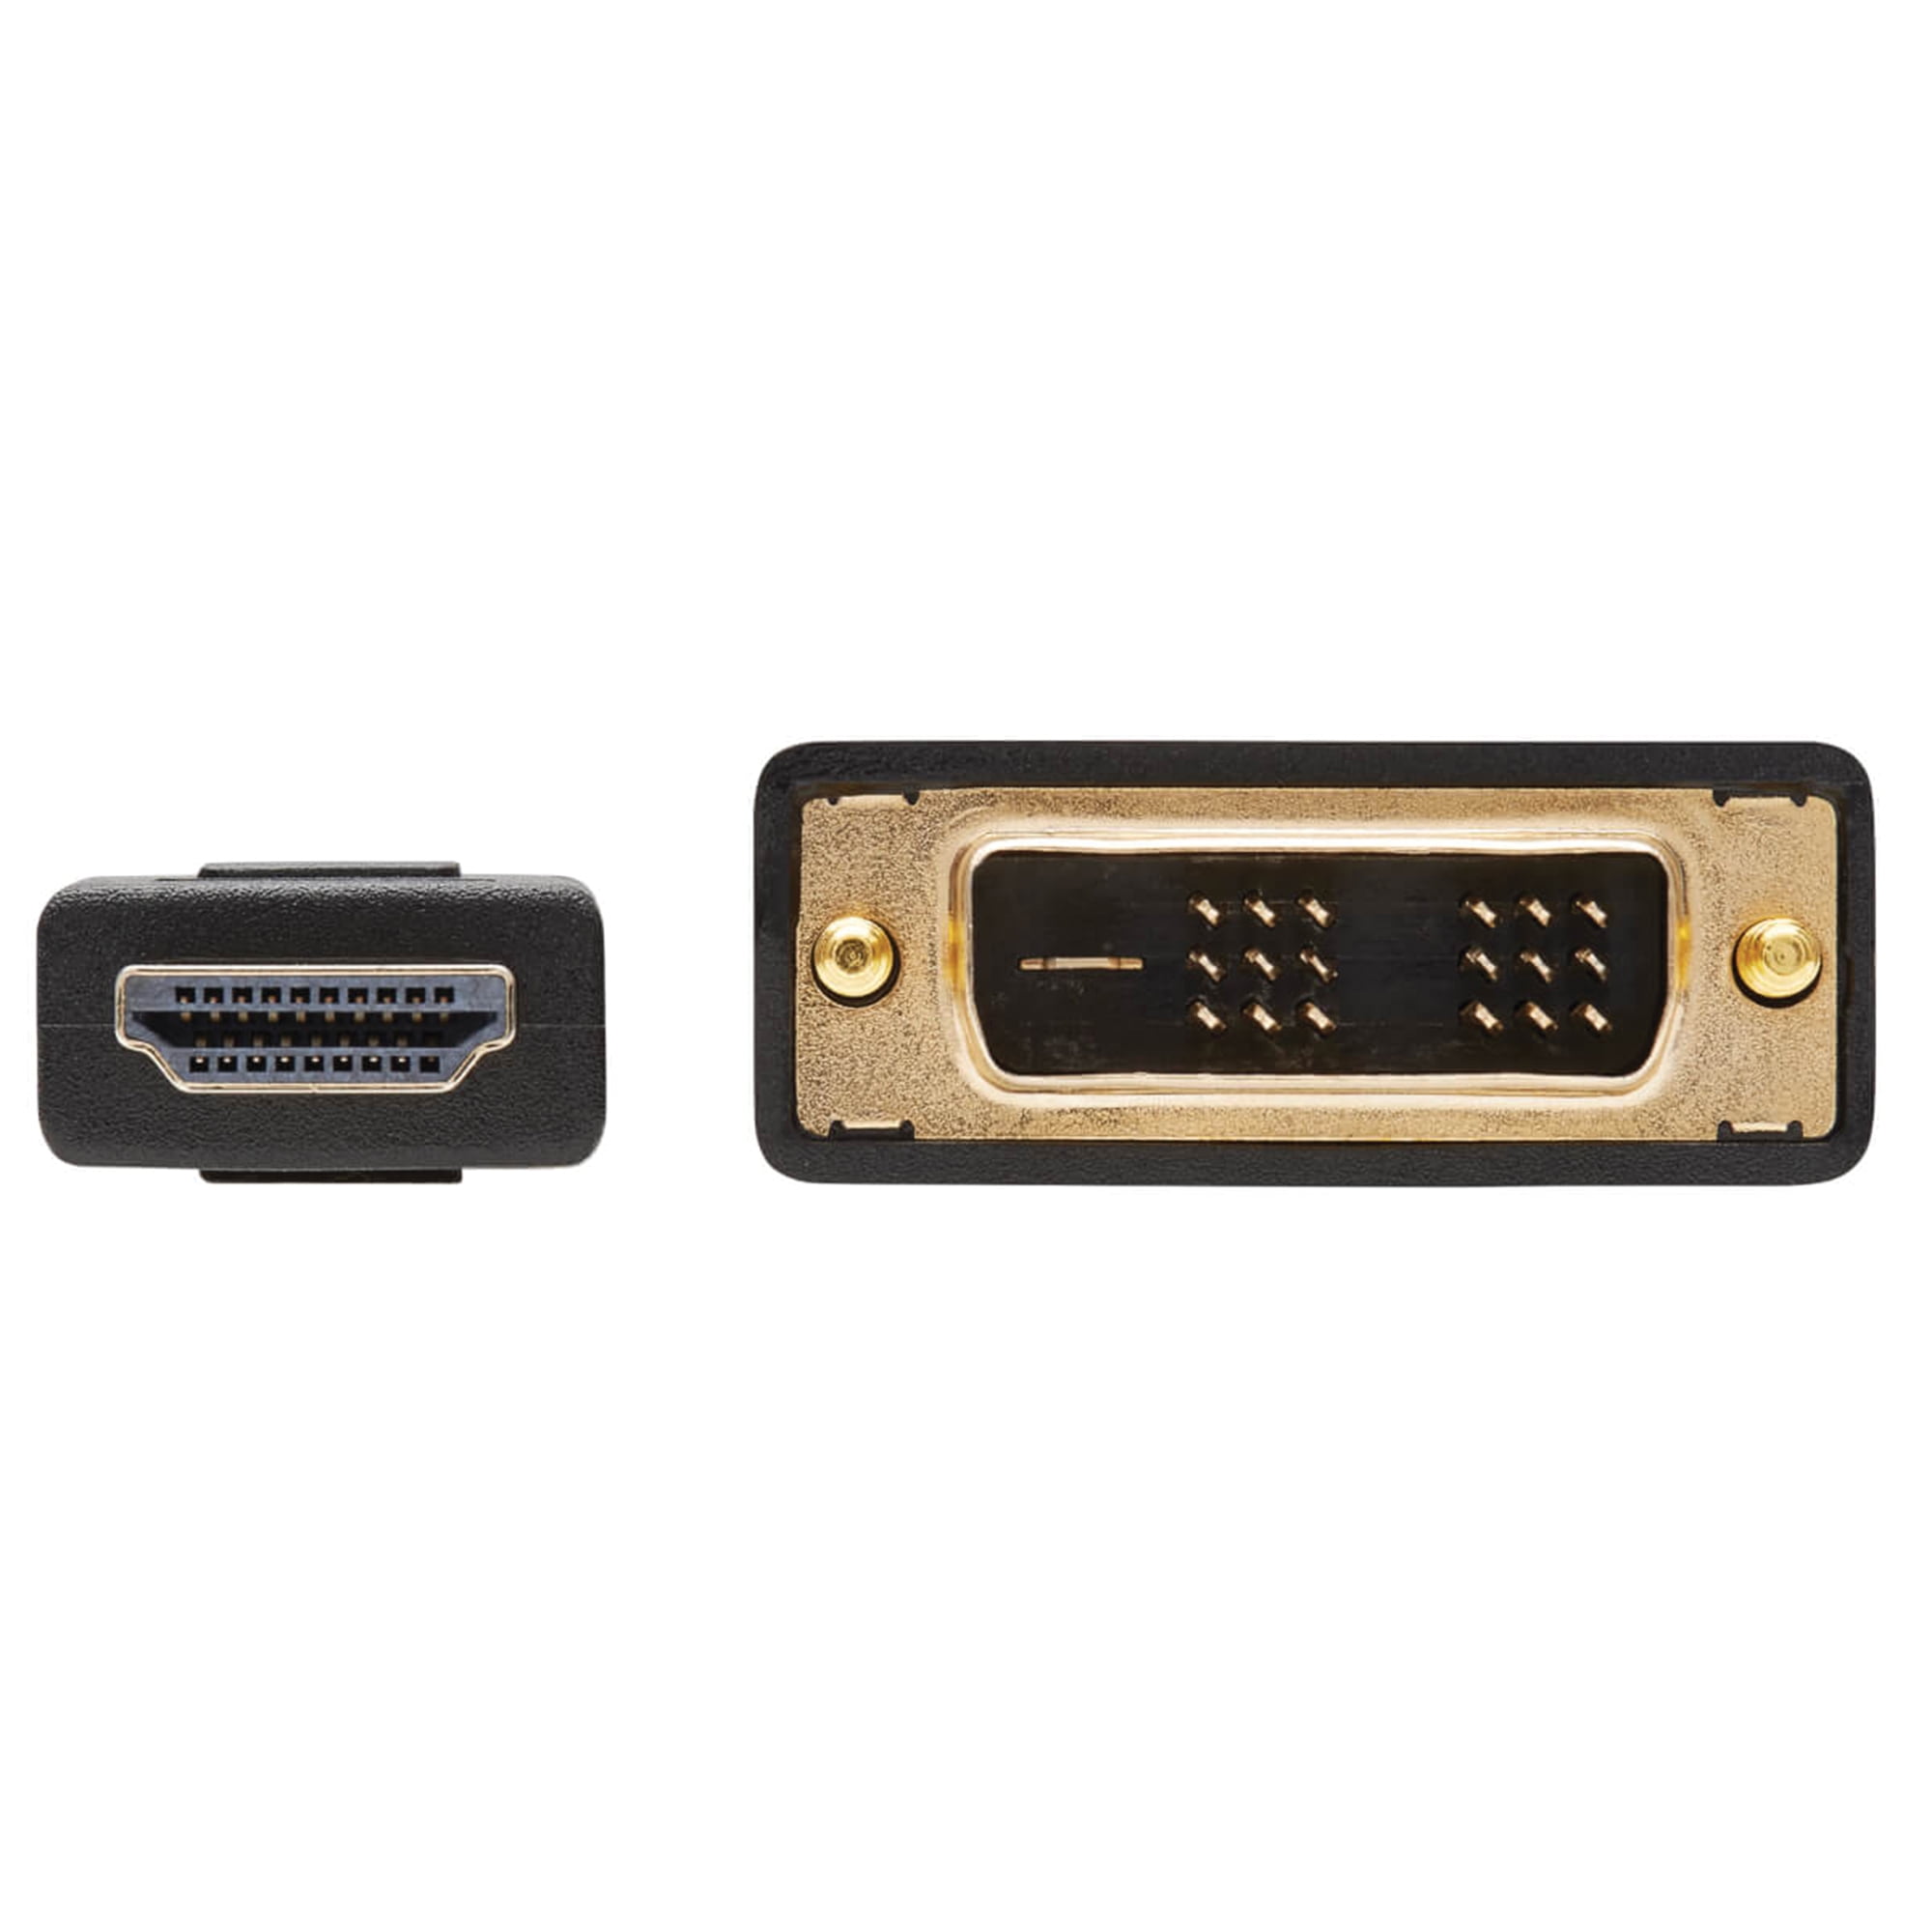  Legrand - Cable DVI a HDMI C2G, DVI-D macho a HDMI macho, cable  adaptador HDMI negro, cable adaptador bidireccional de 6.6 ft (6.56 pies),  1 unidad, C2G 42516 : Todo lo demás